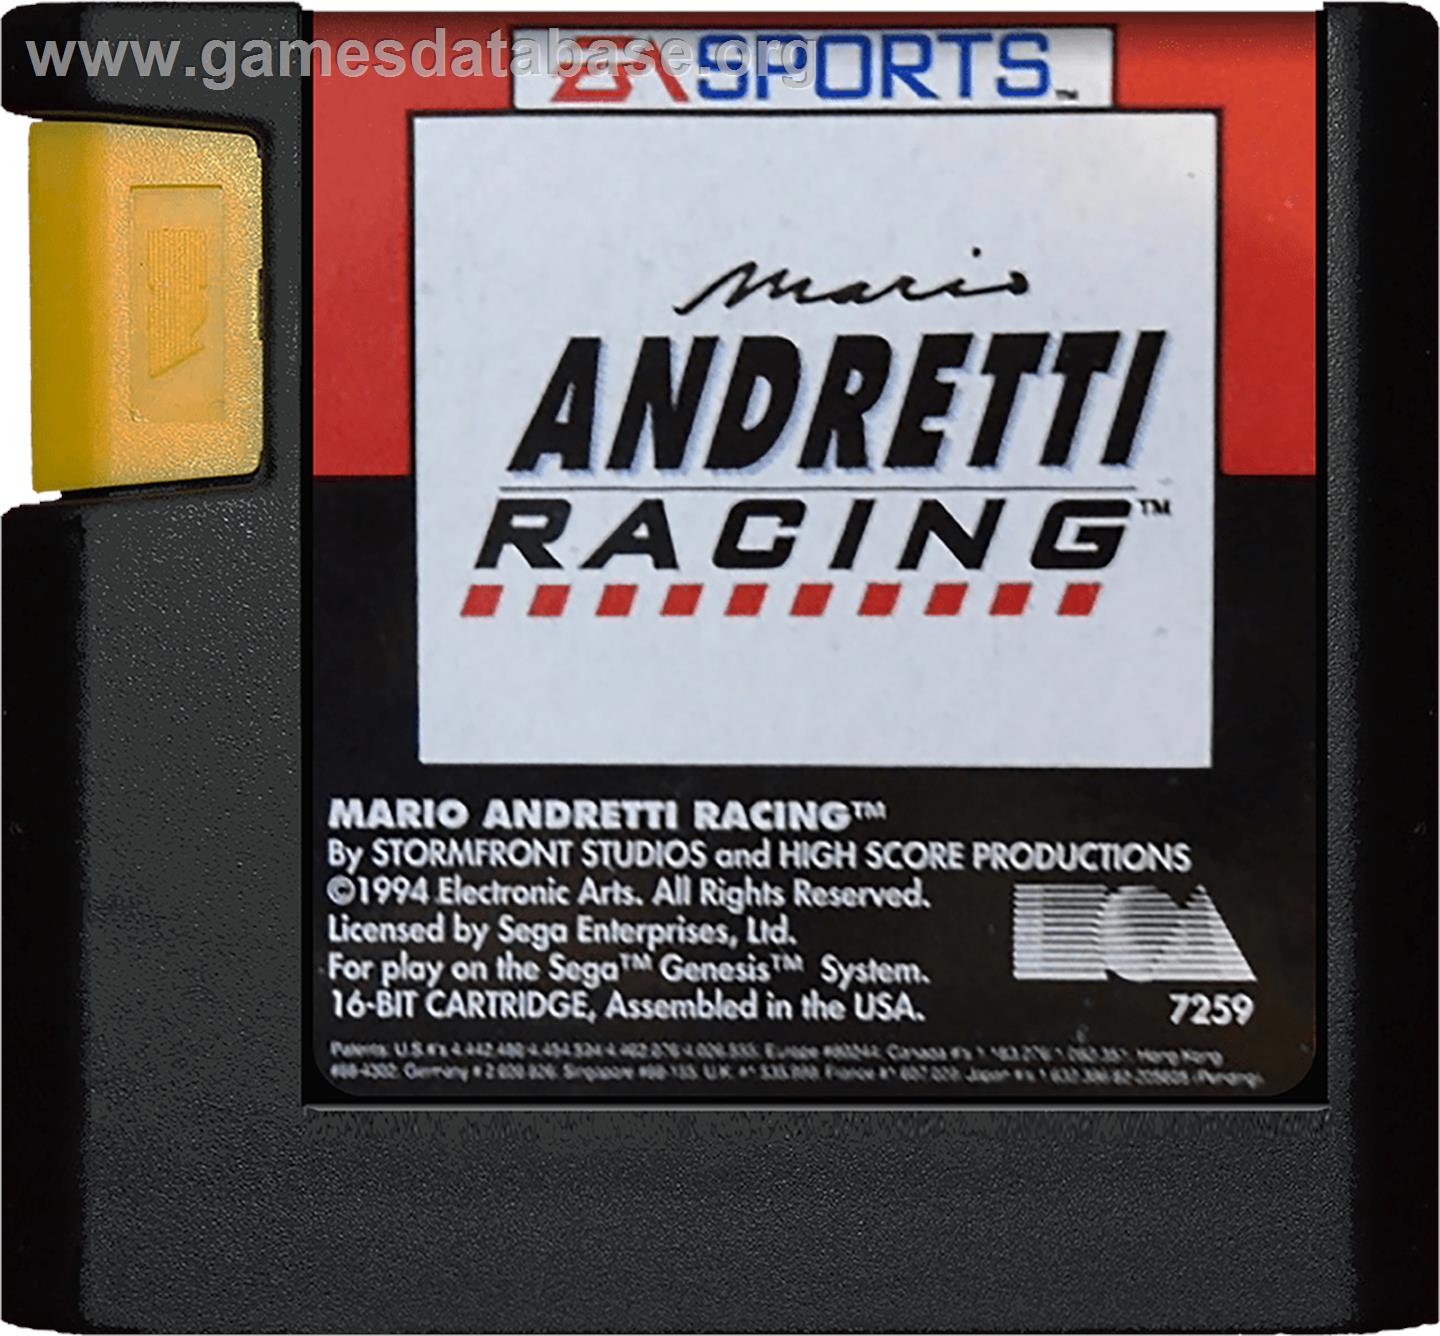 Mario Andretti Racing - Sega Genesis - Artwork - Cartridge